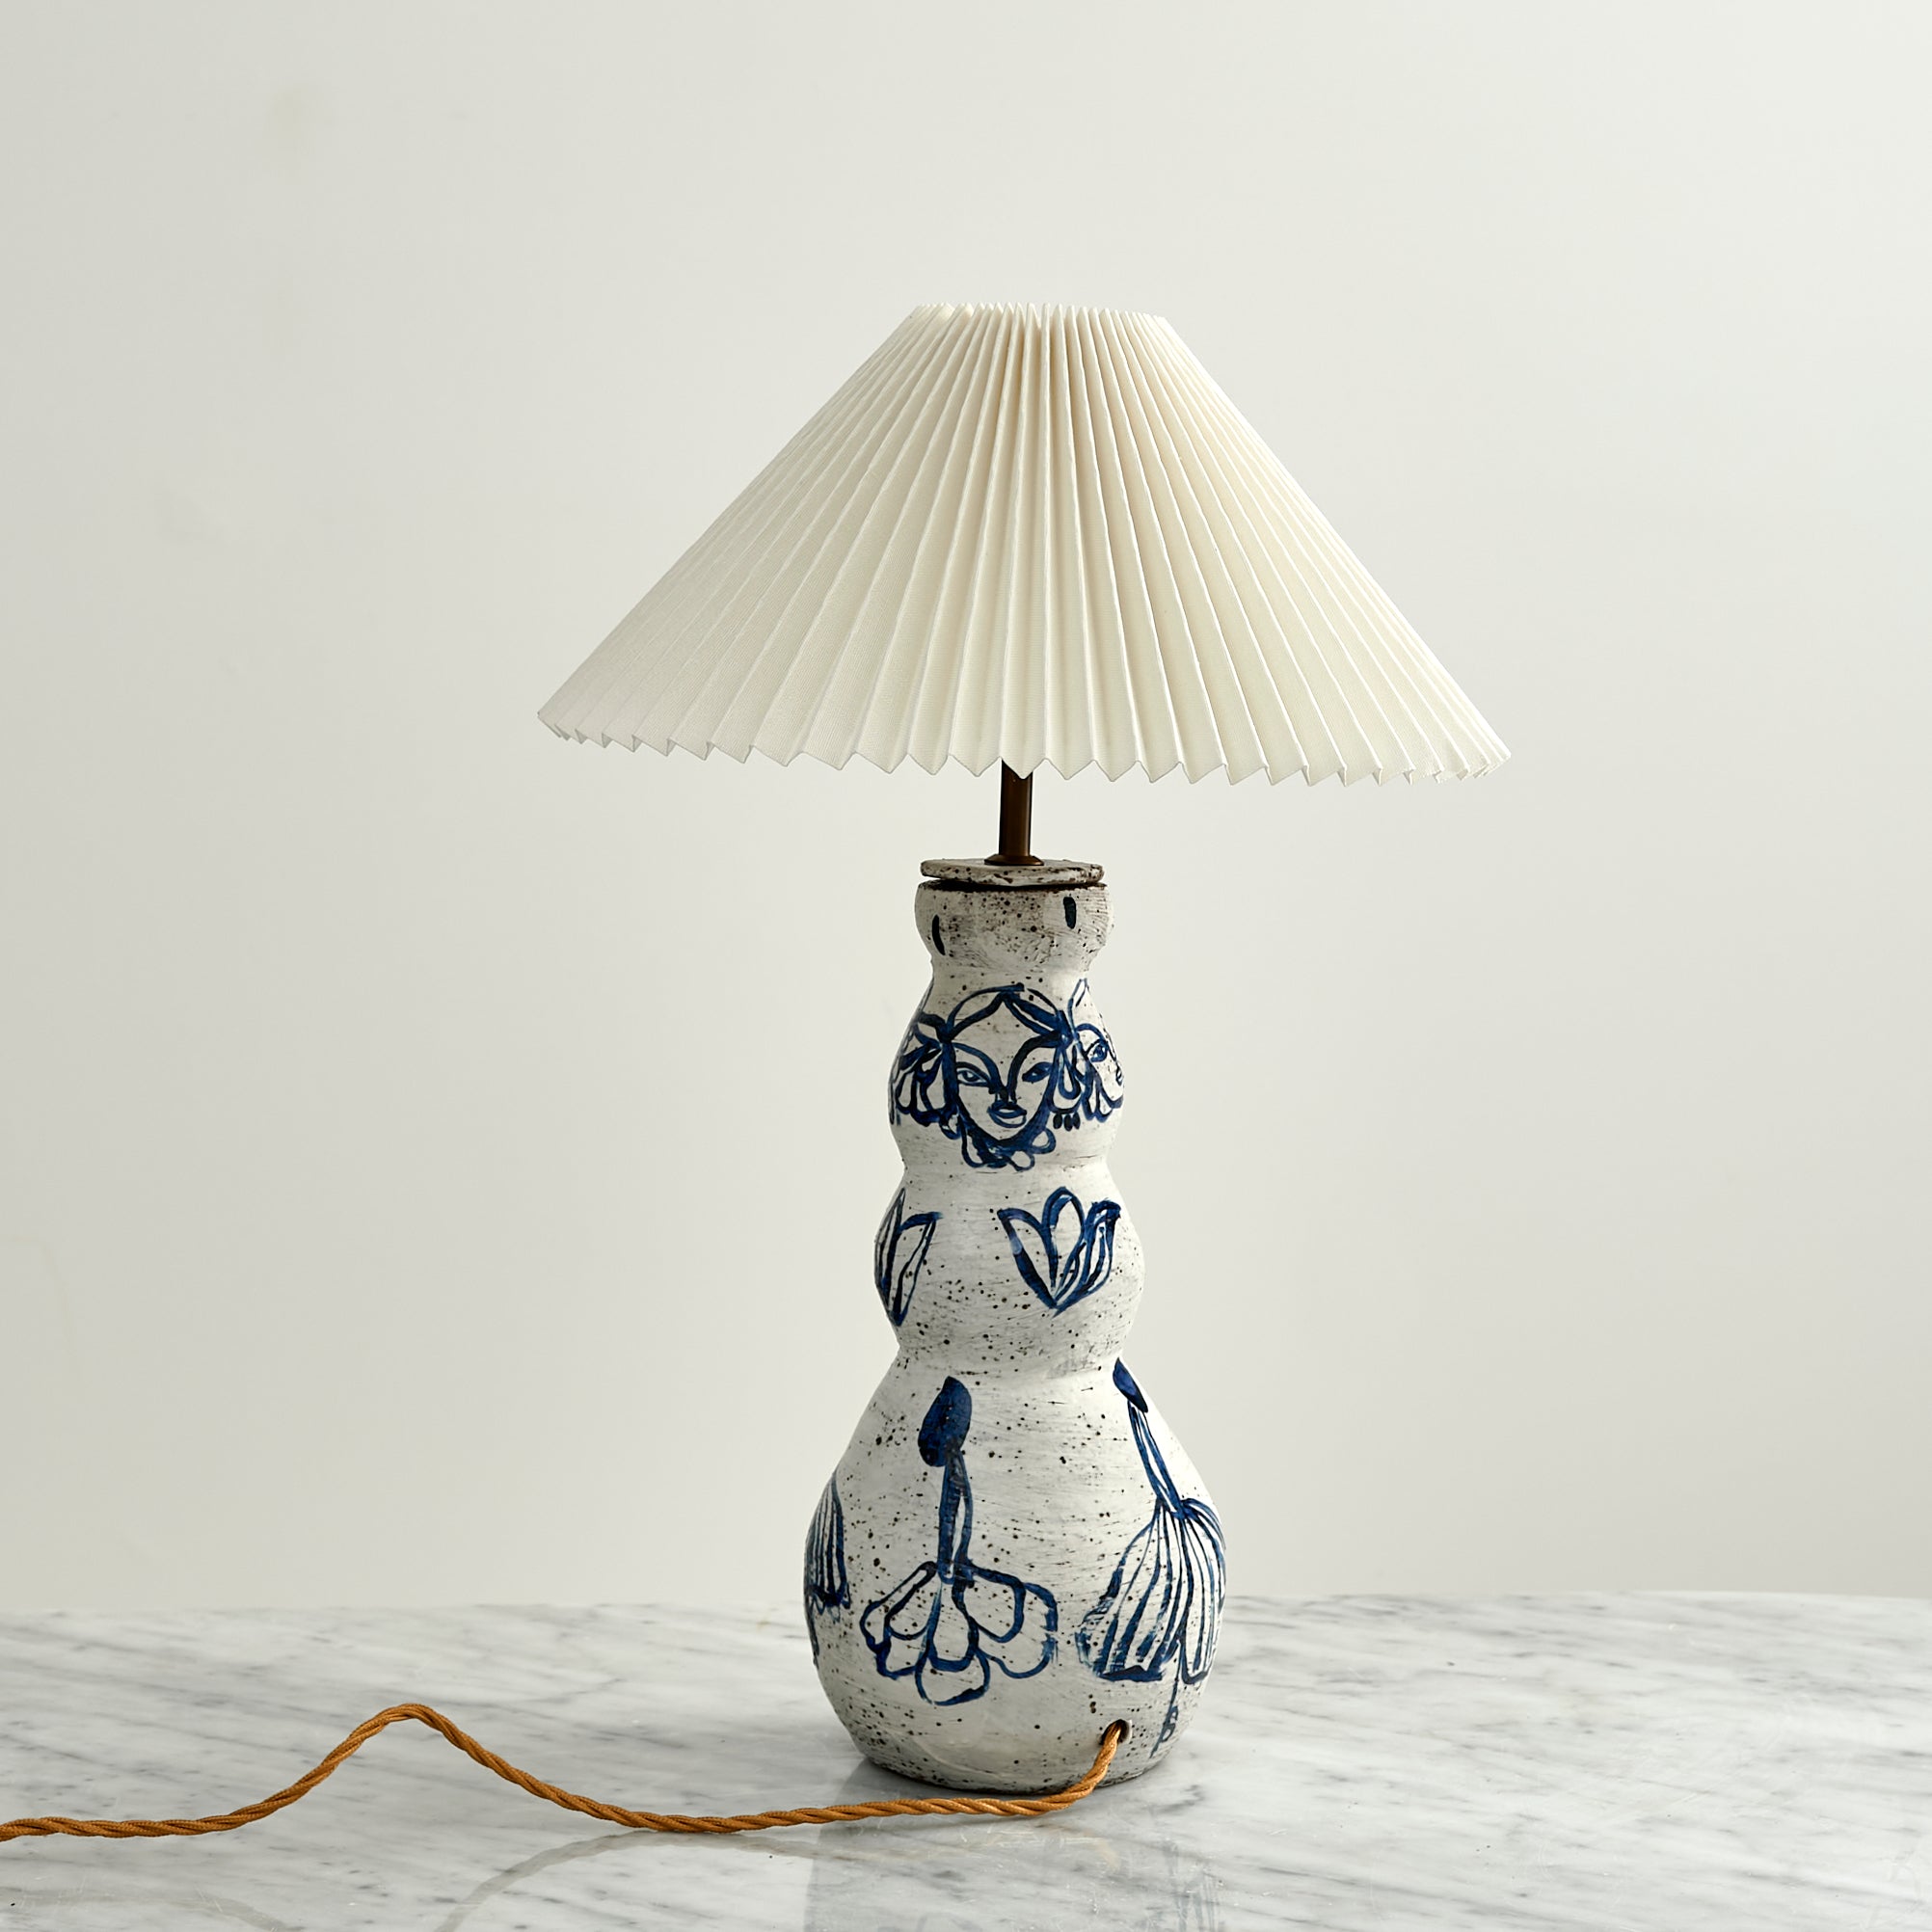 Lamp No. 6